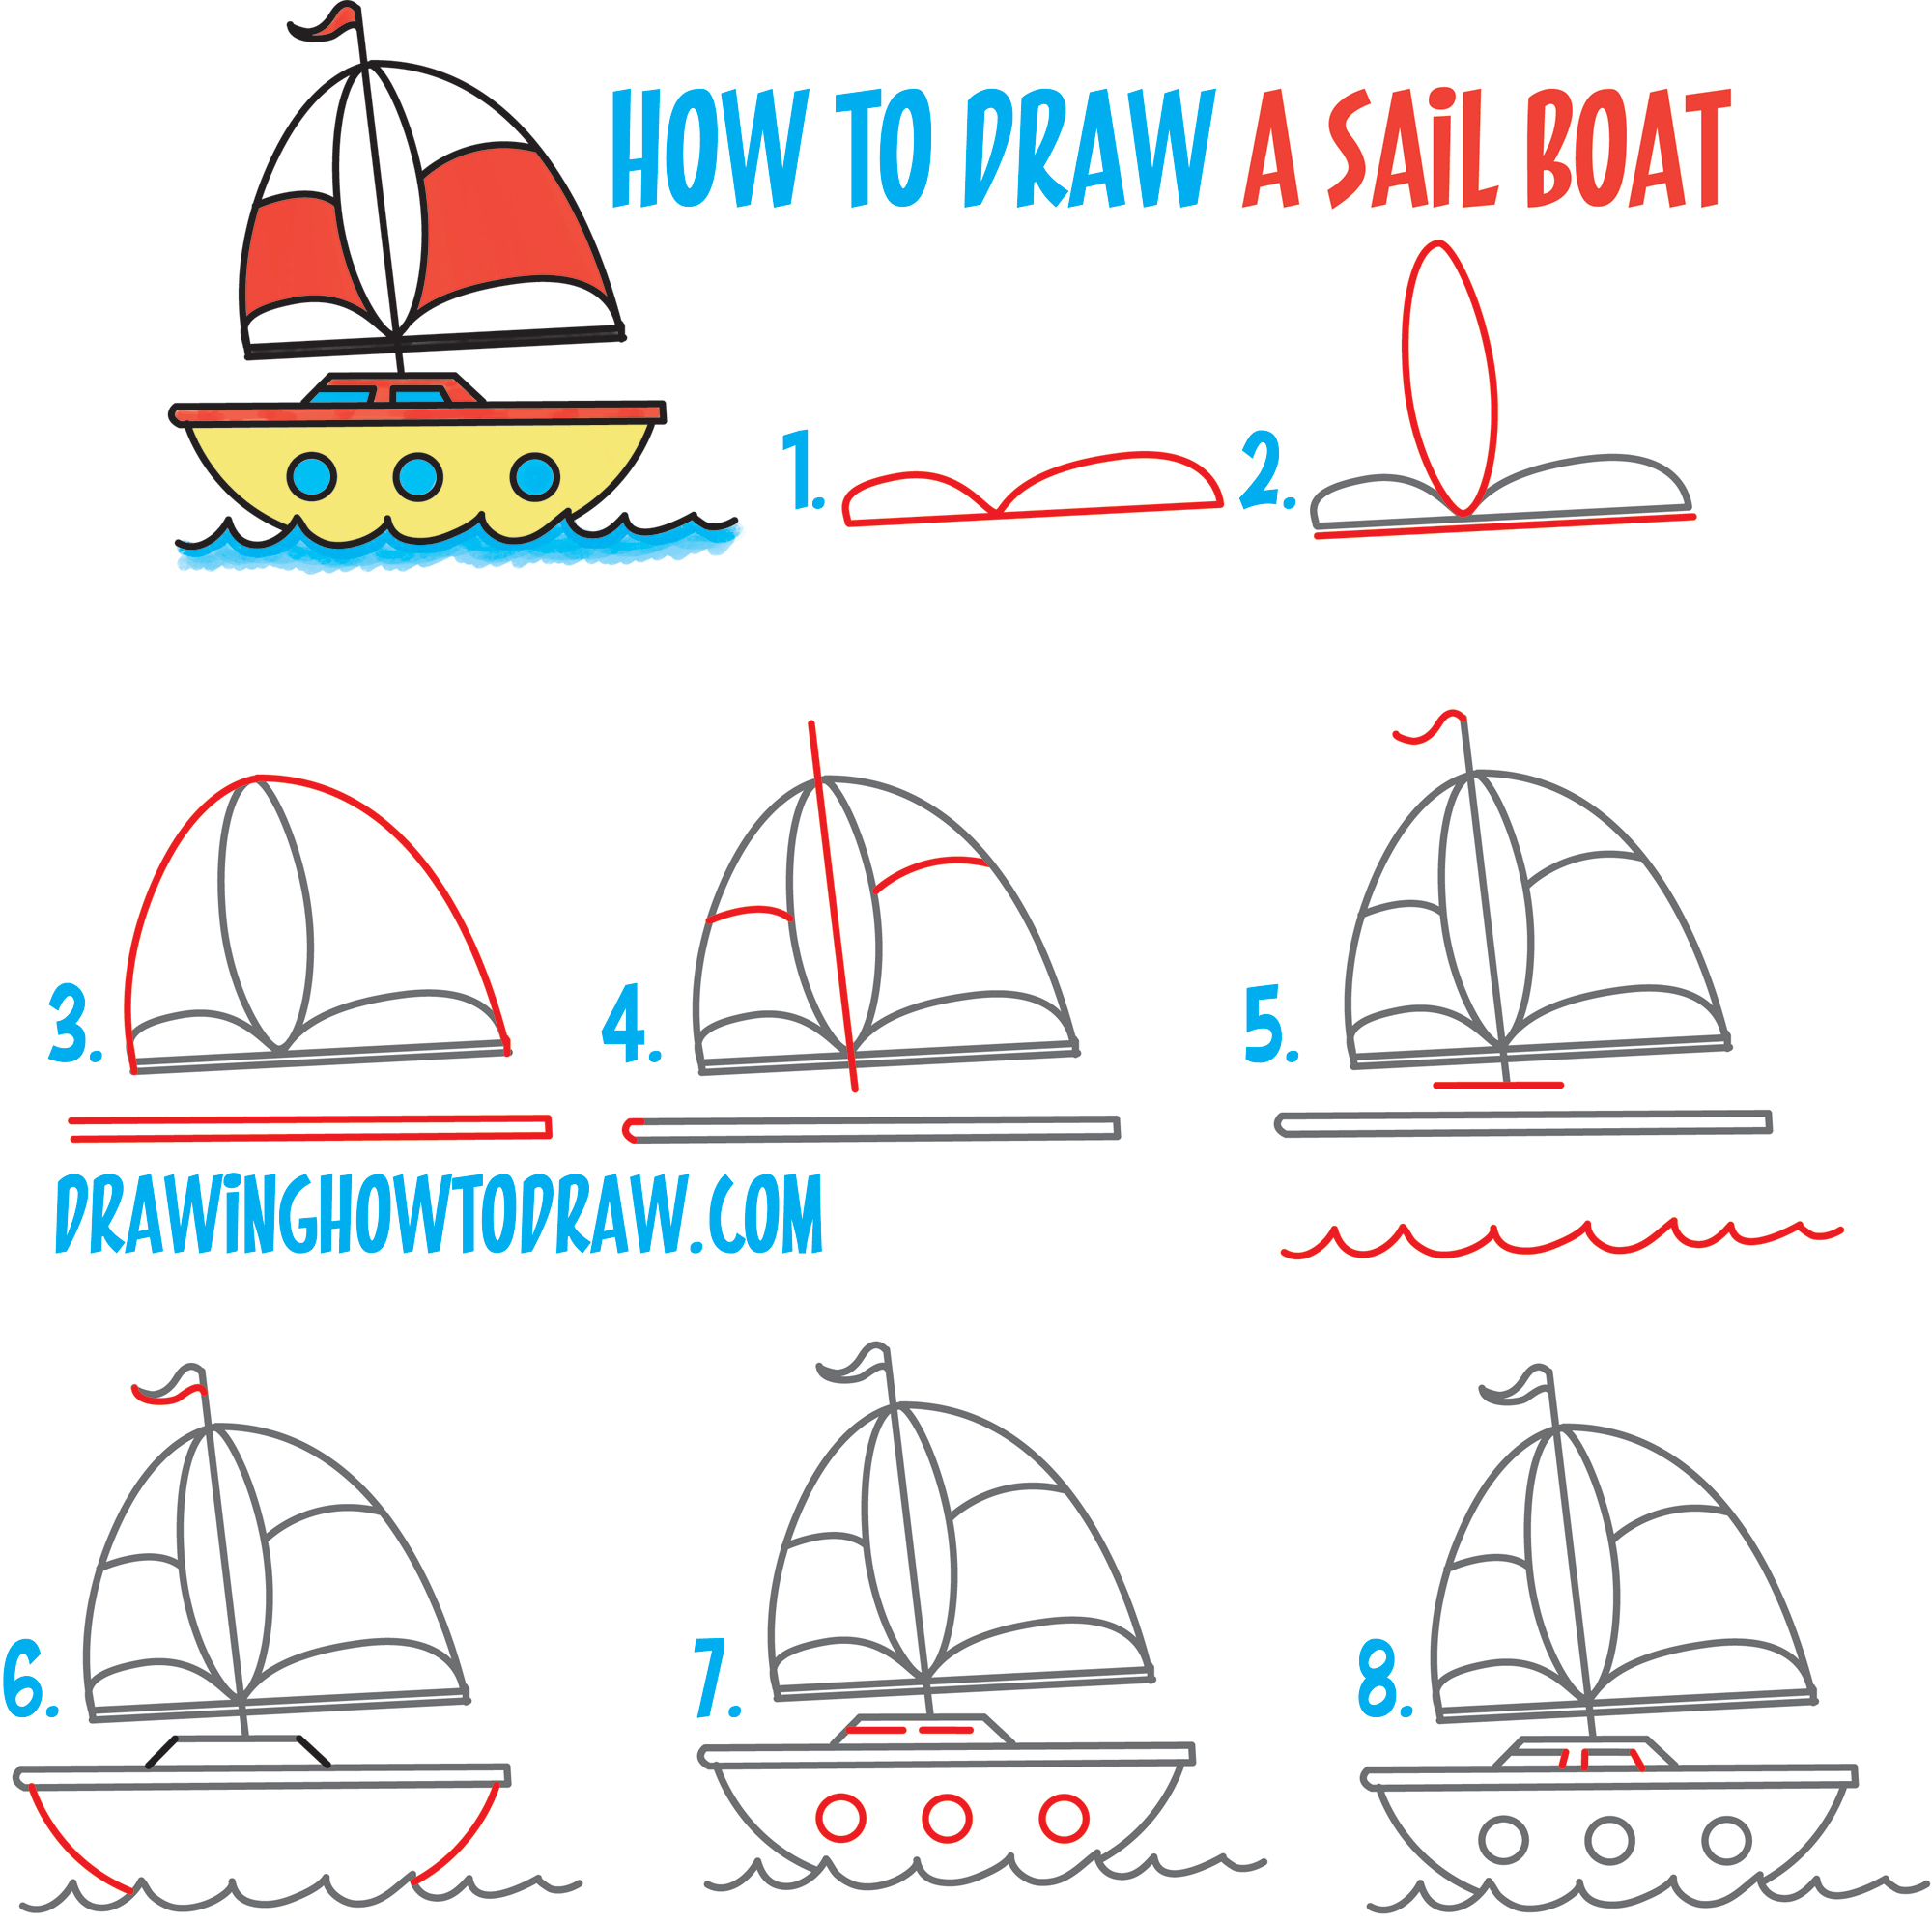 Boat Sketch Images  Free Download on Freepik